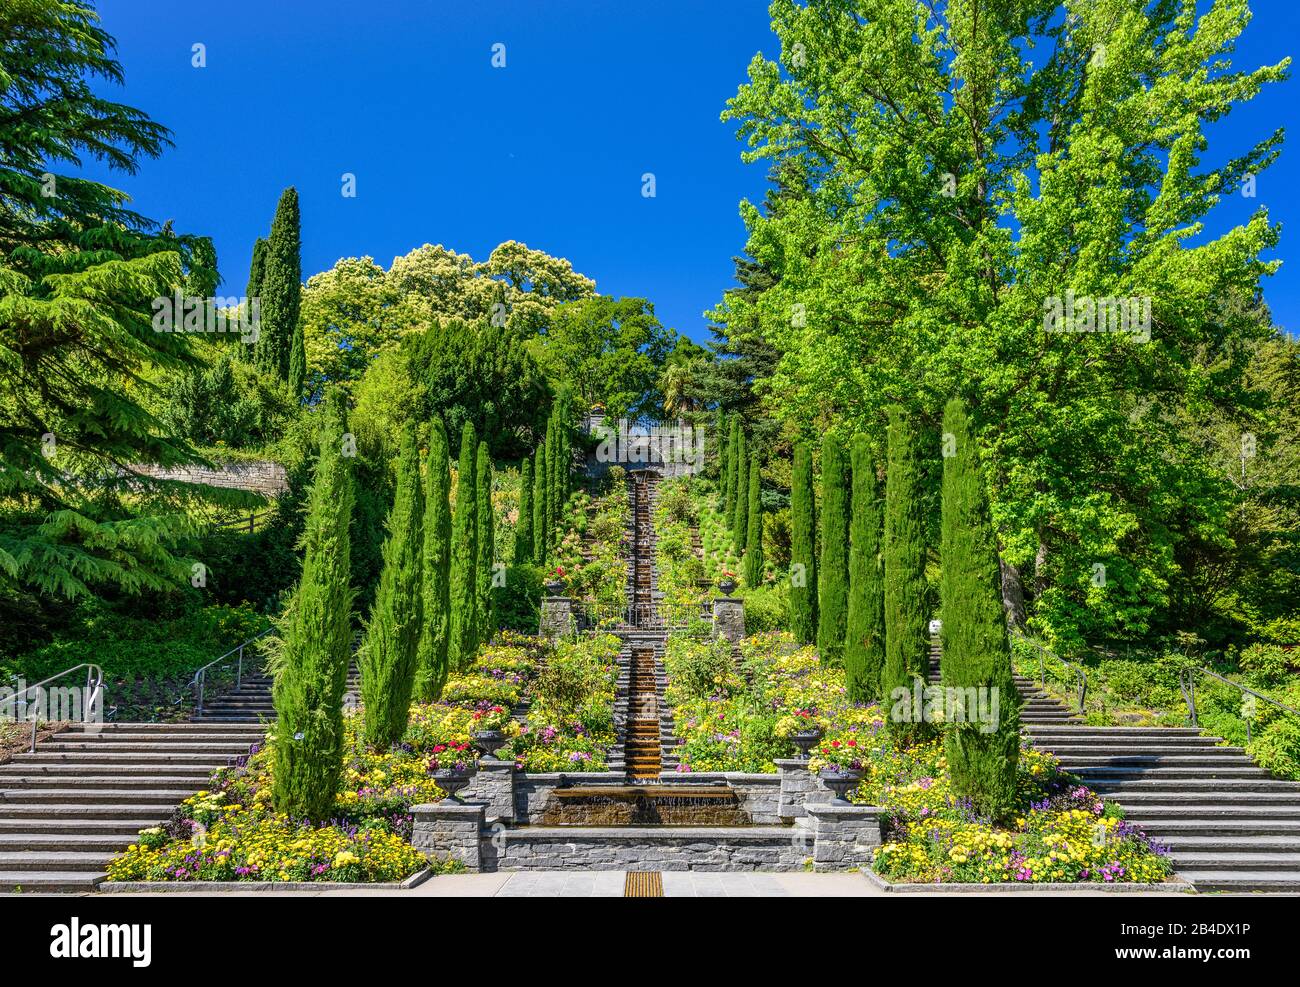 Deutschland, Baden-Württemberg, Bodensee, Konstanz, Insel Mainau, Italienische Blumen - Wassertreppe Foto Stock